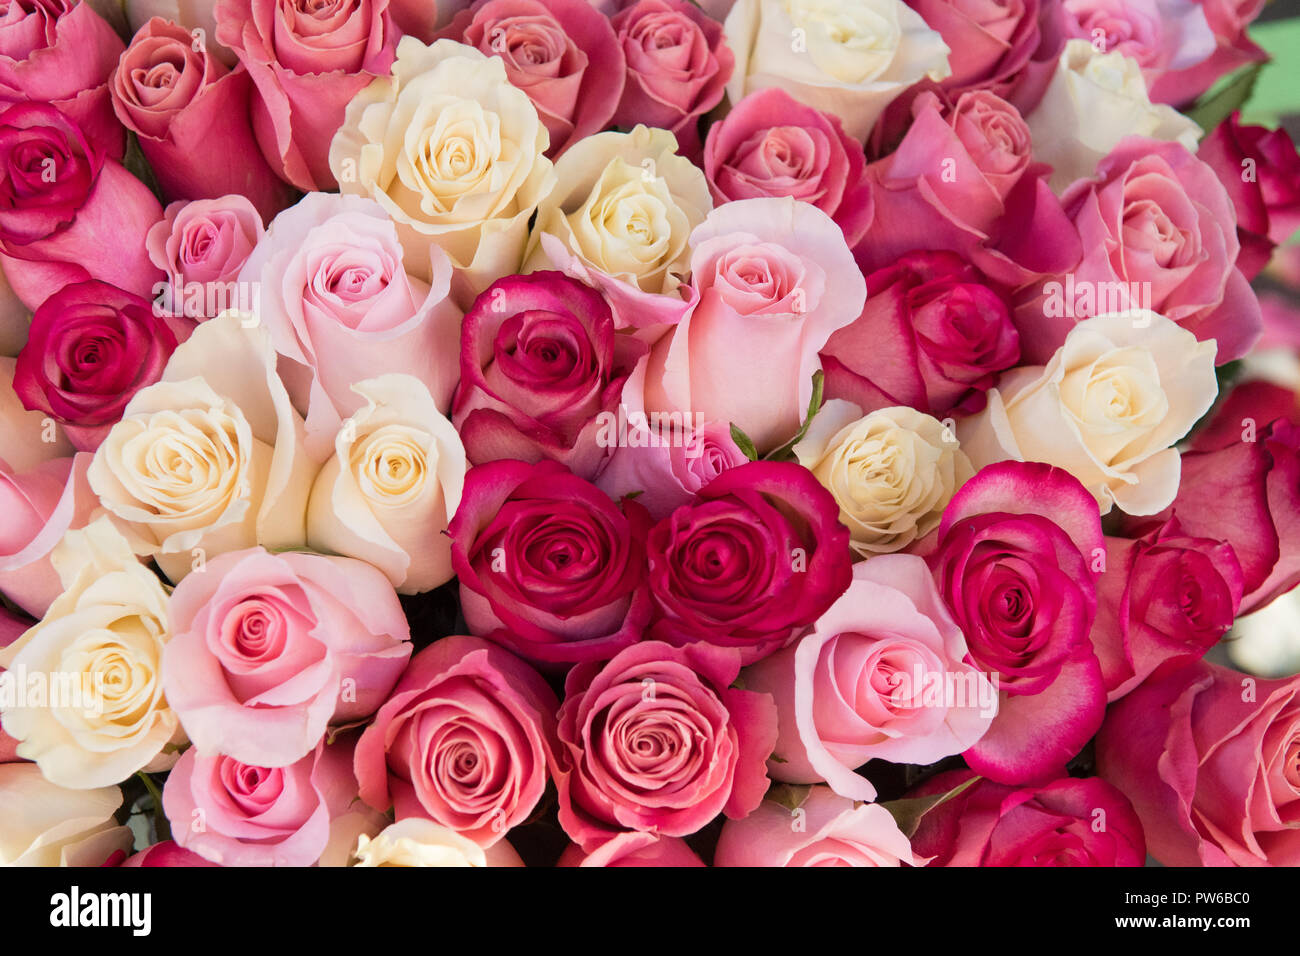 Hình nền hoa hồng hồng và kem: Khi kết hợp giữa hoa hồng hồng và màu kem nhạt, sẽ tạo ra một hình nền đầy tinh tế và sang trọng. Hãy chiêm ngưỡng bức ảnh này, bạn sẽ cảm nhận được sự tươi trẻ, nữ tính và đầy cuốn hút mà chỉ hoa hồng hồng và kem có thể mang lại.